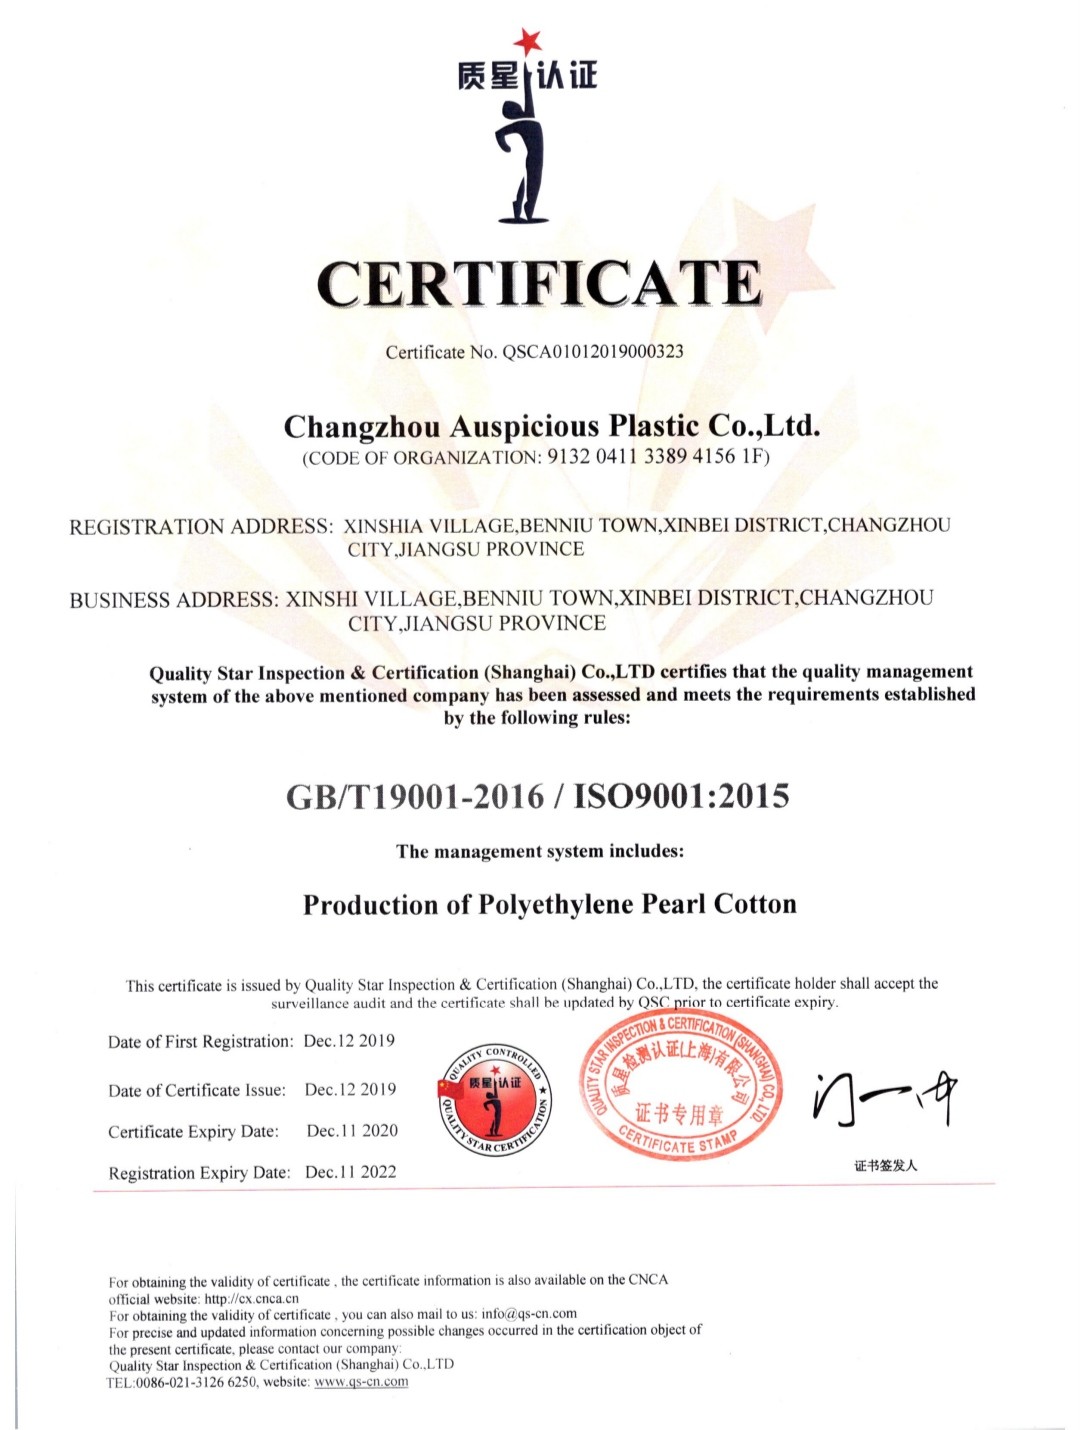 Changzhou Auspicious Plastic Co., Ltd. Certifications